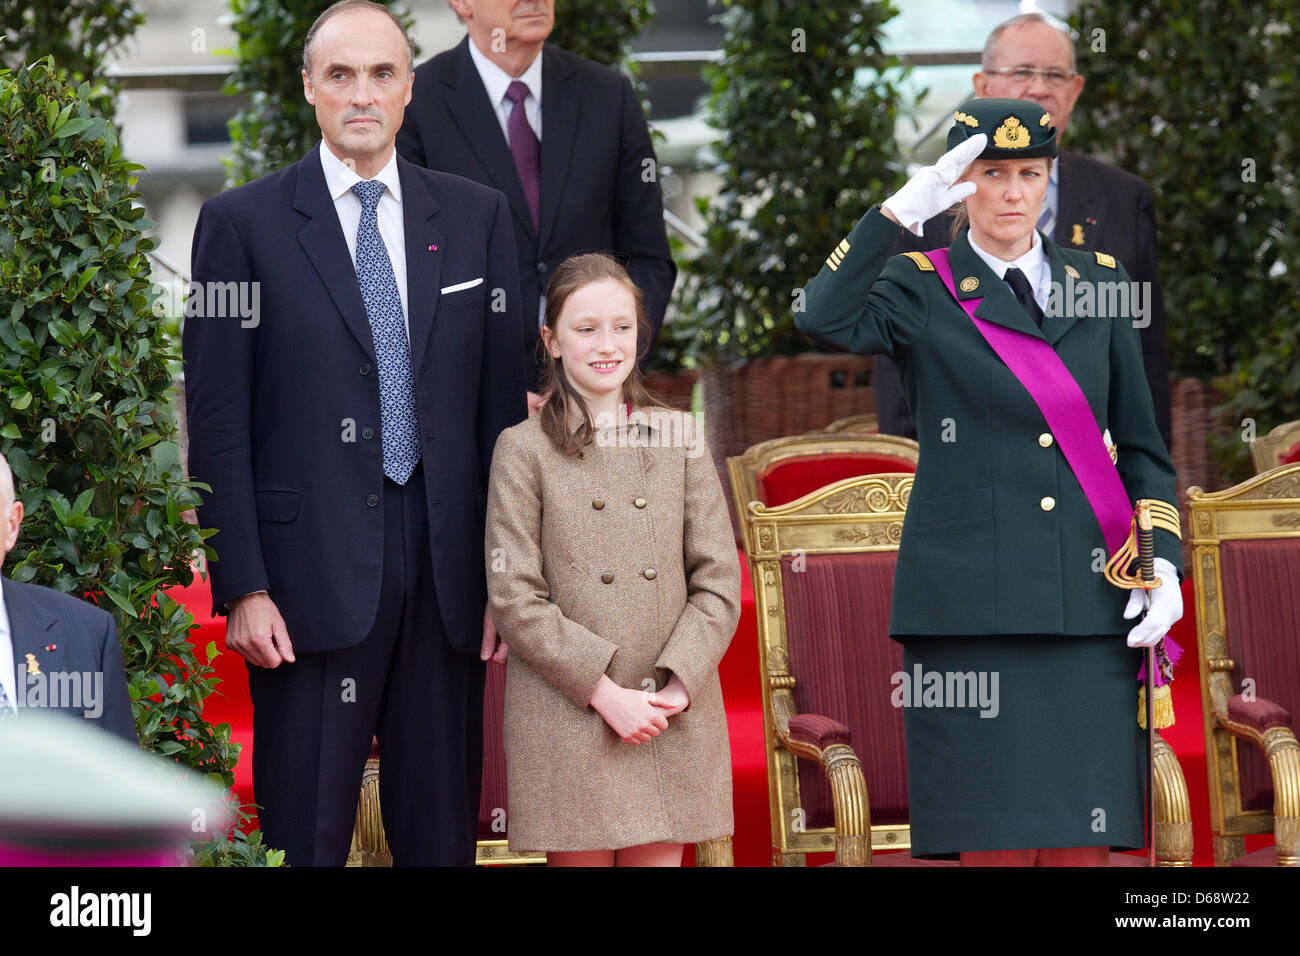 Le Prince Lorenz, la Princesse Laetitia Maria et la Princesse Astrid de Belgique assister à la parade militaire à l'occasion de la fête nationale belge à Bruxelles, Belgique, 21 juillet 2012. Photo : Patrick van Katwijk Pays-bas OUT Banque D'Images